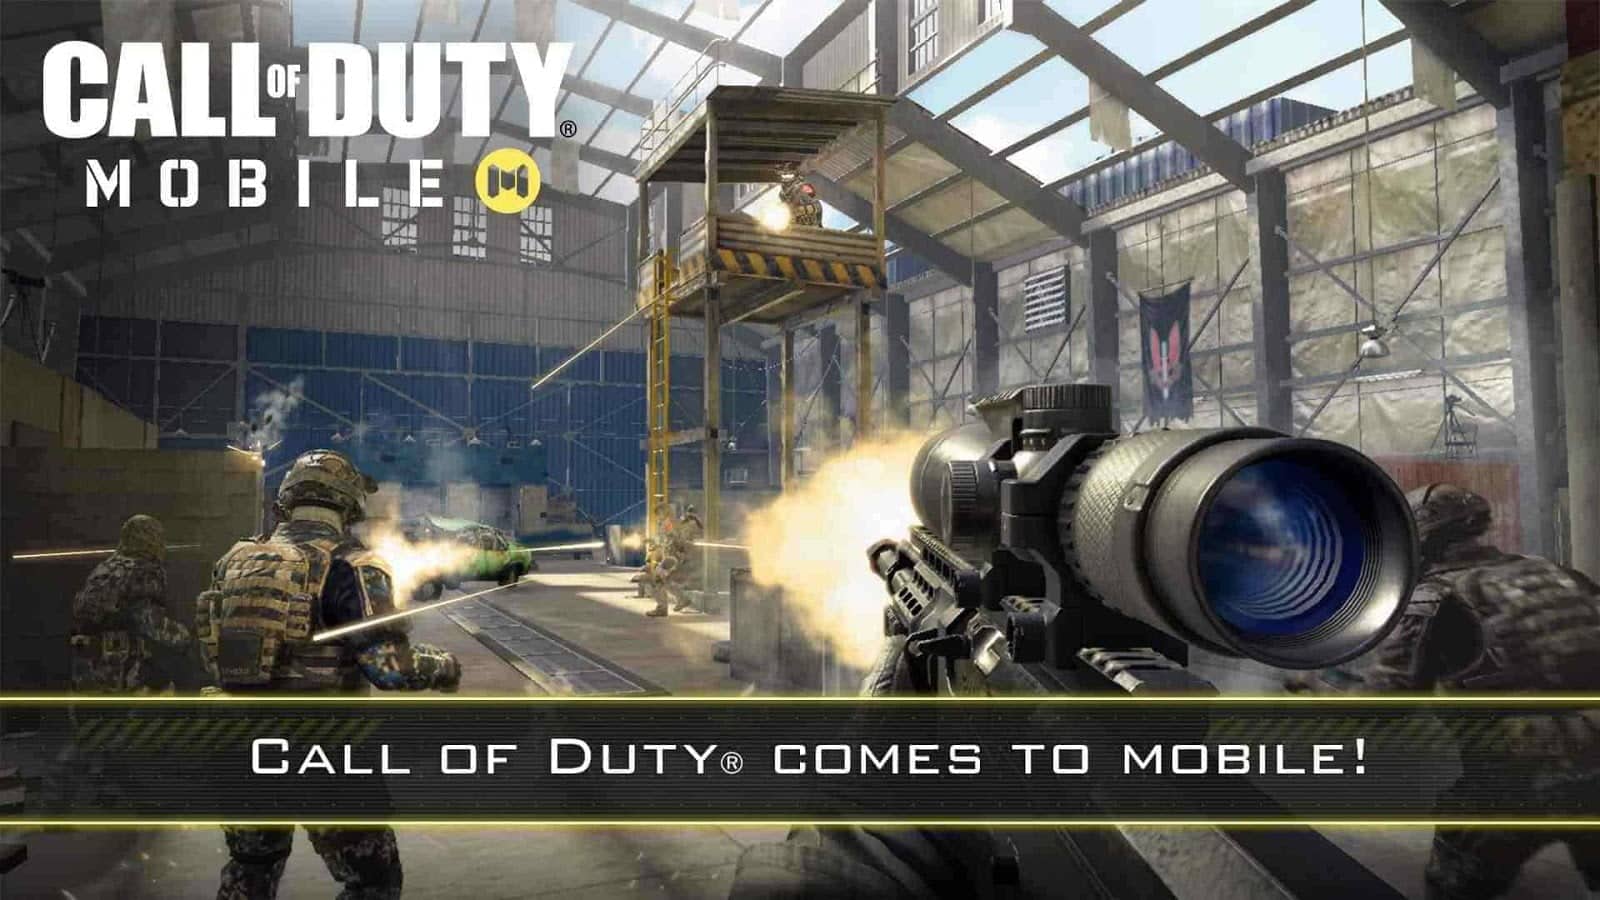 كيف تلعب Call of Duty Mobile على جهاز كمبيوتر؟ | تقنيات ديزاد